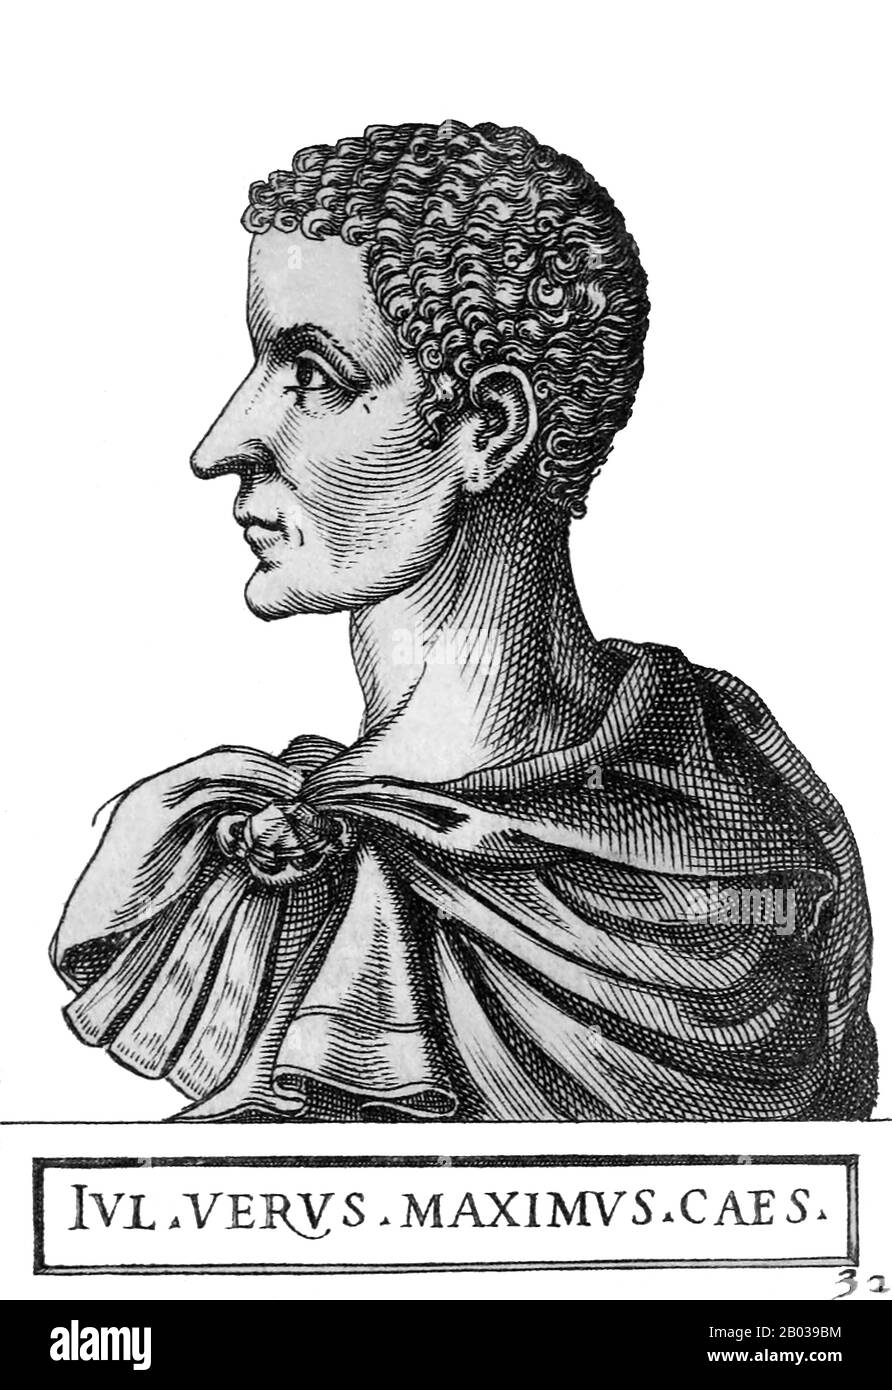 Gaius Julius Verus Maximus (217/220 - 238), manchmal fälschlicherweise als Gaius Julius Verus Maximinus oder Maximinus der Jüngere bekannt, war der Sohn des thrakorömischen Kaiser Maximinus Thrax. Maximus wurde 236 zum Cäsar ernannt, hatte aber nur wenig wirkliche Macht, bis er 238 von der Prätorianergarde während der Belagerung von Aquileia an der Seite seines Vaters ermordet wurde. Stockfoto